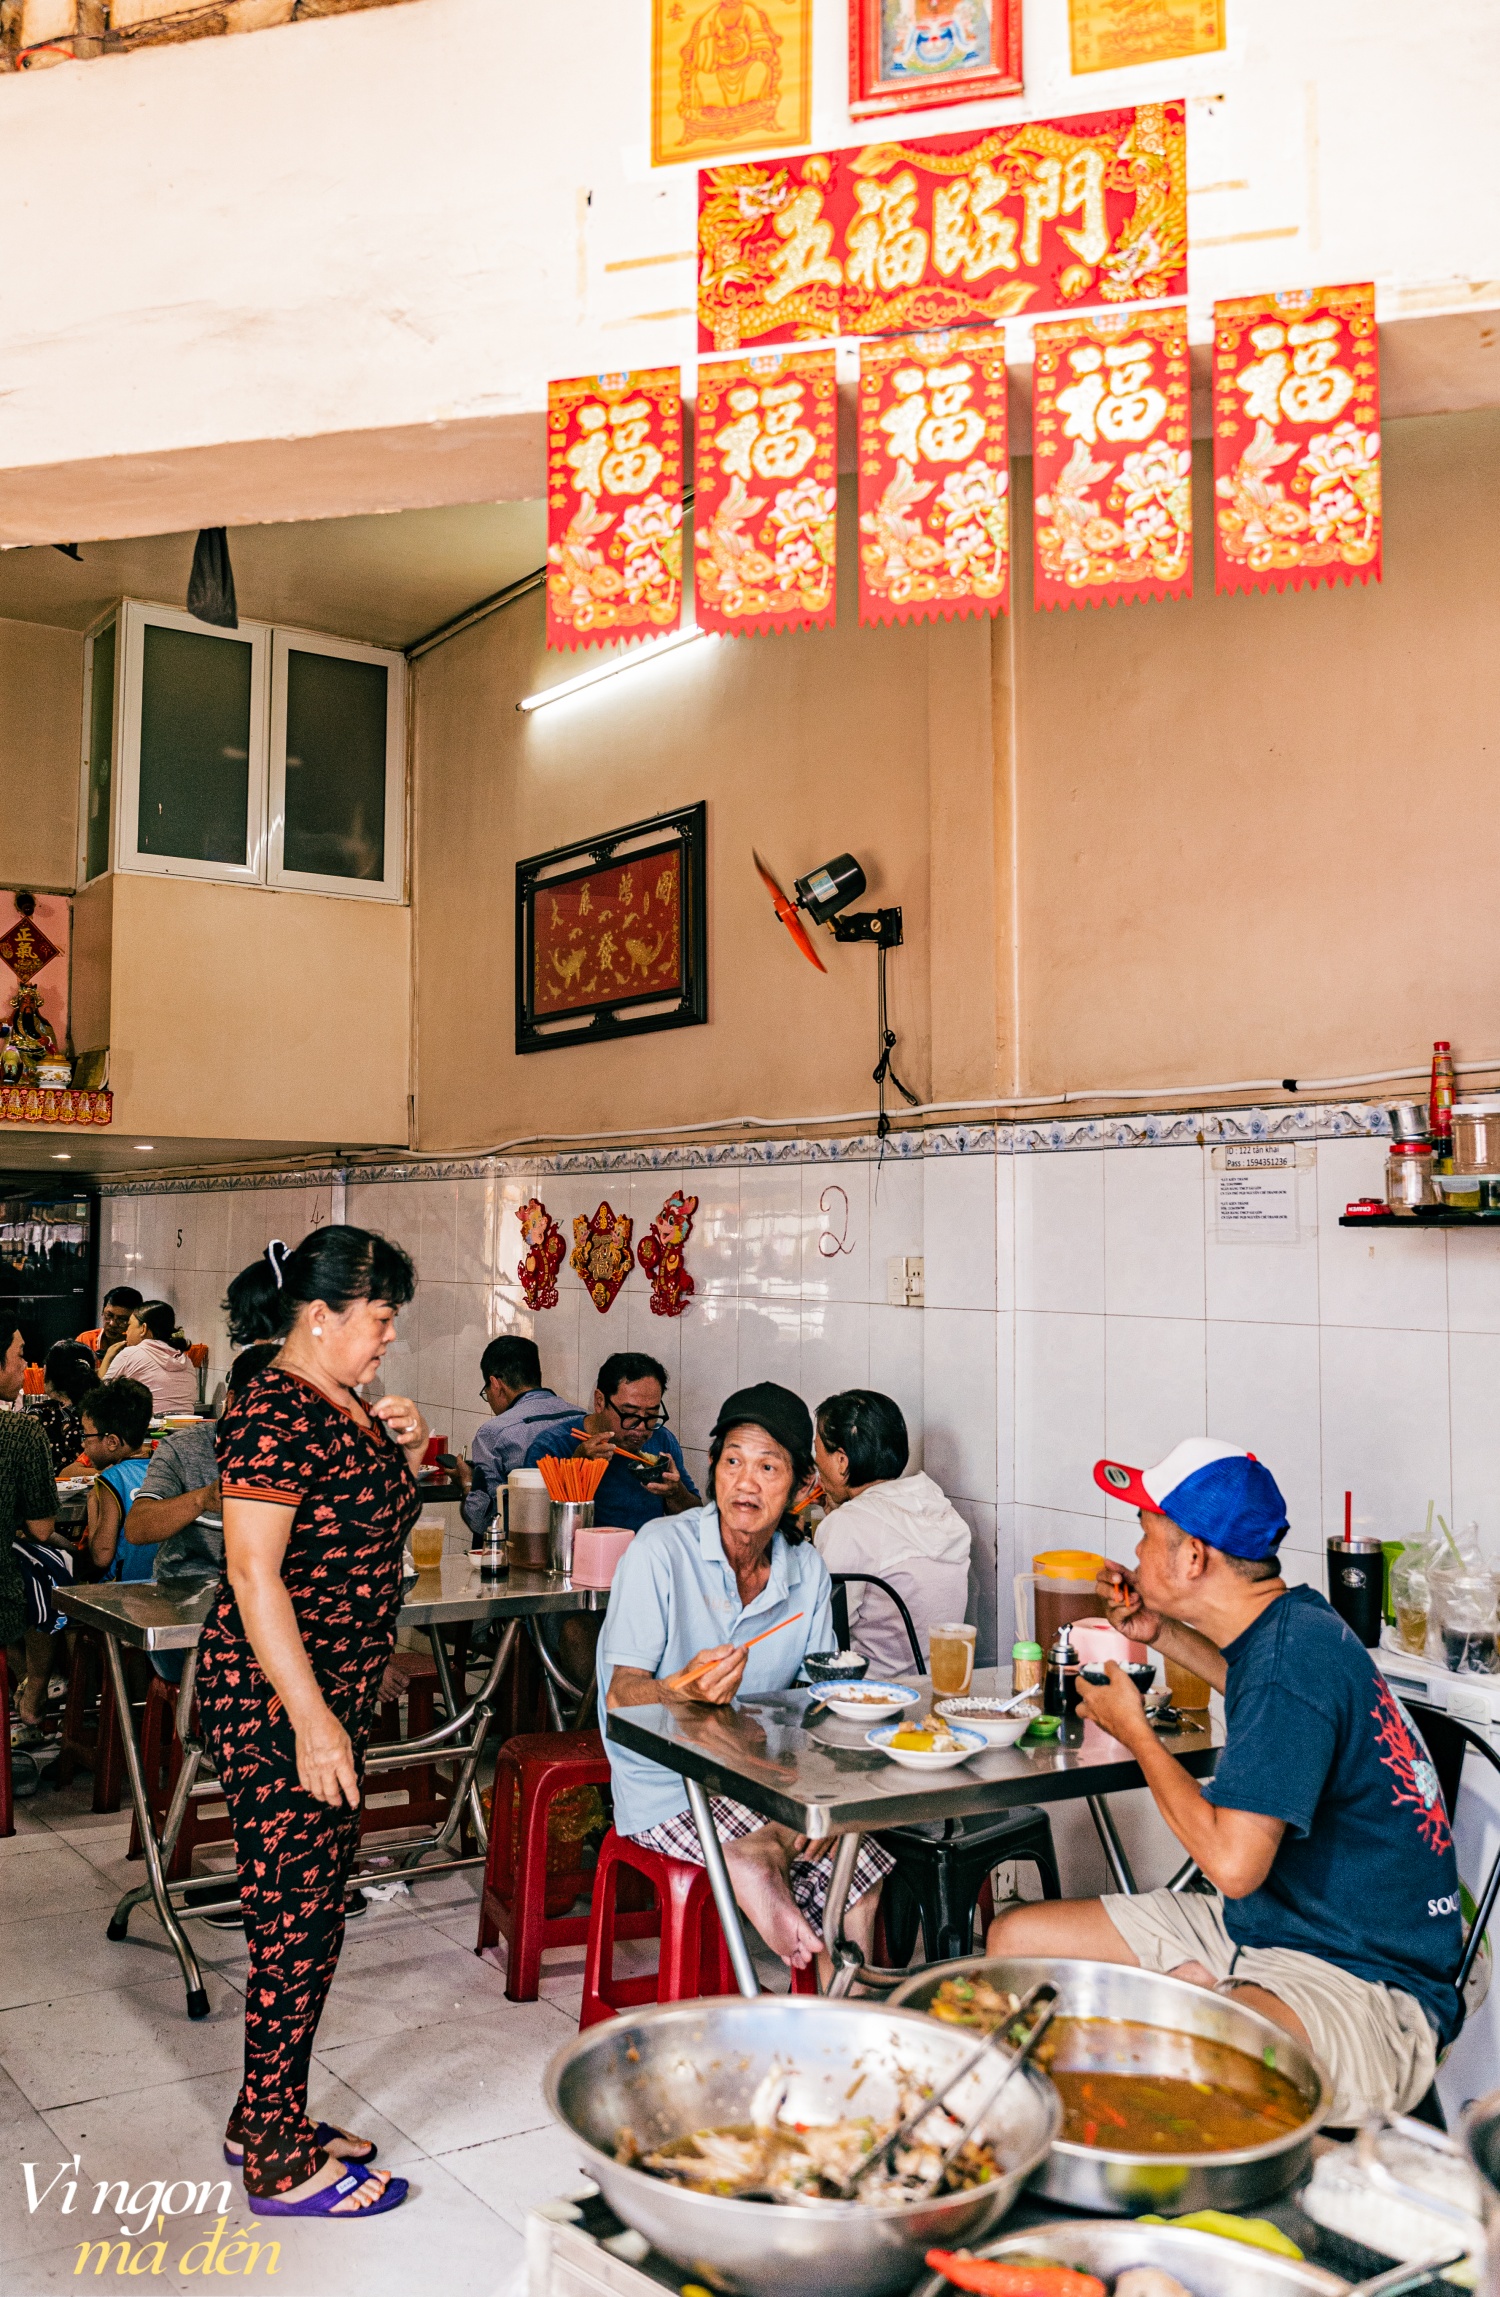 Đi ăn cơm bình dân kiểu người Hoa: Cửa tiệm bán 3 đời mỗi ngày nấu hơn 30 món cầu kỳ, đông khách đến nỗi không dám mở trên ứng dụng giao đồ ăn- Ảnh 22.